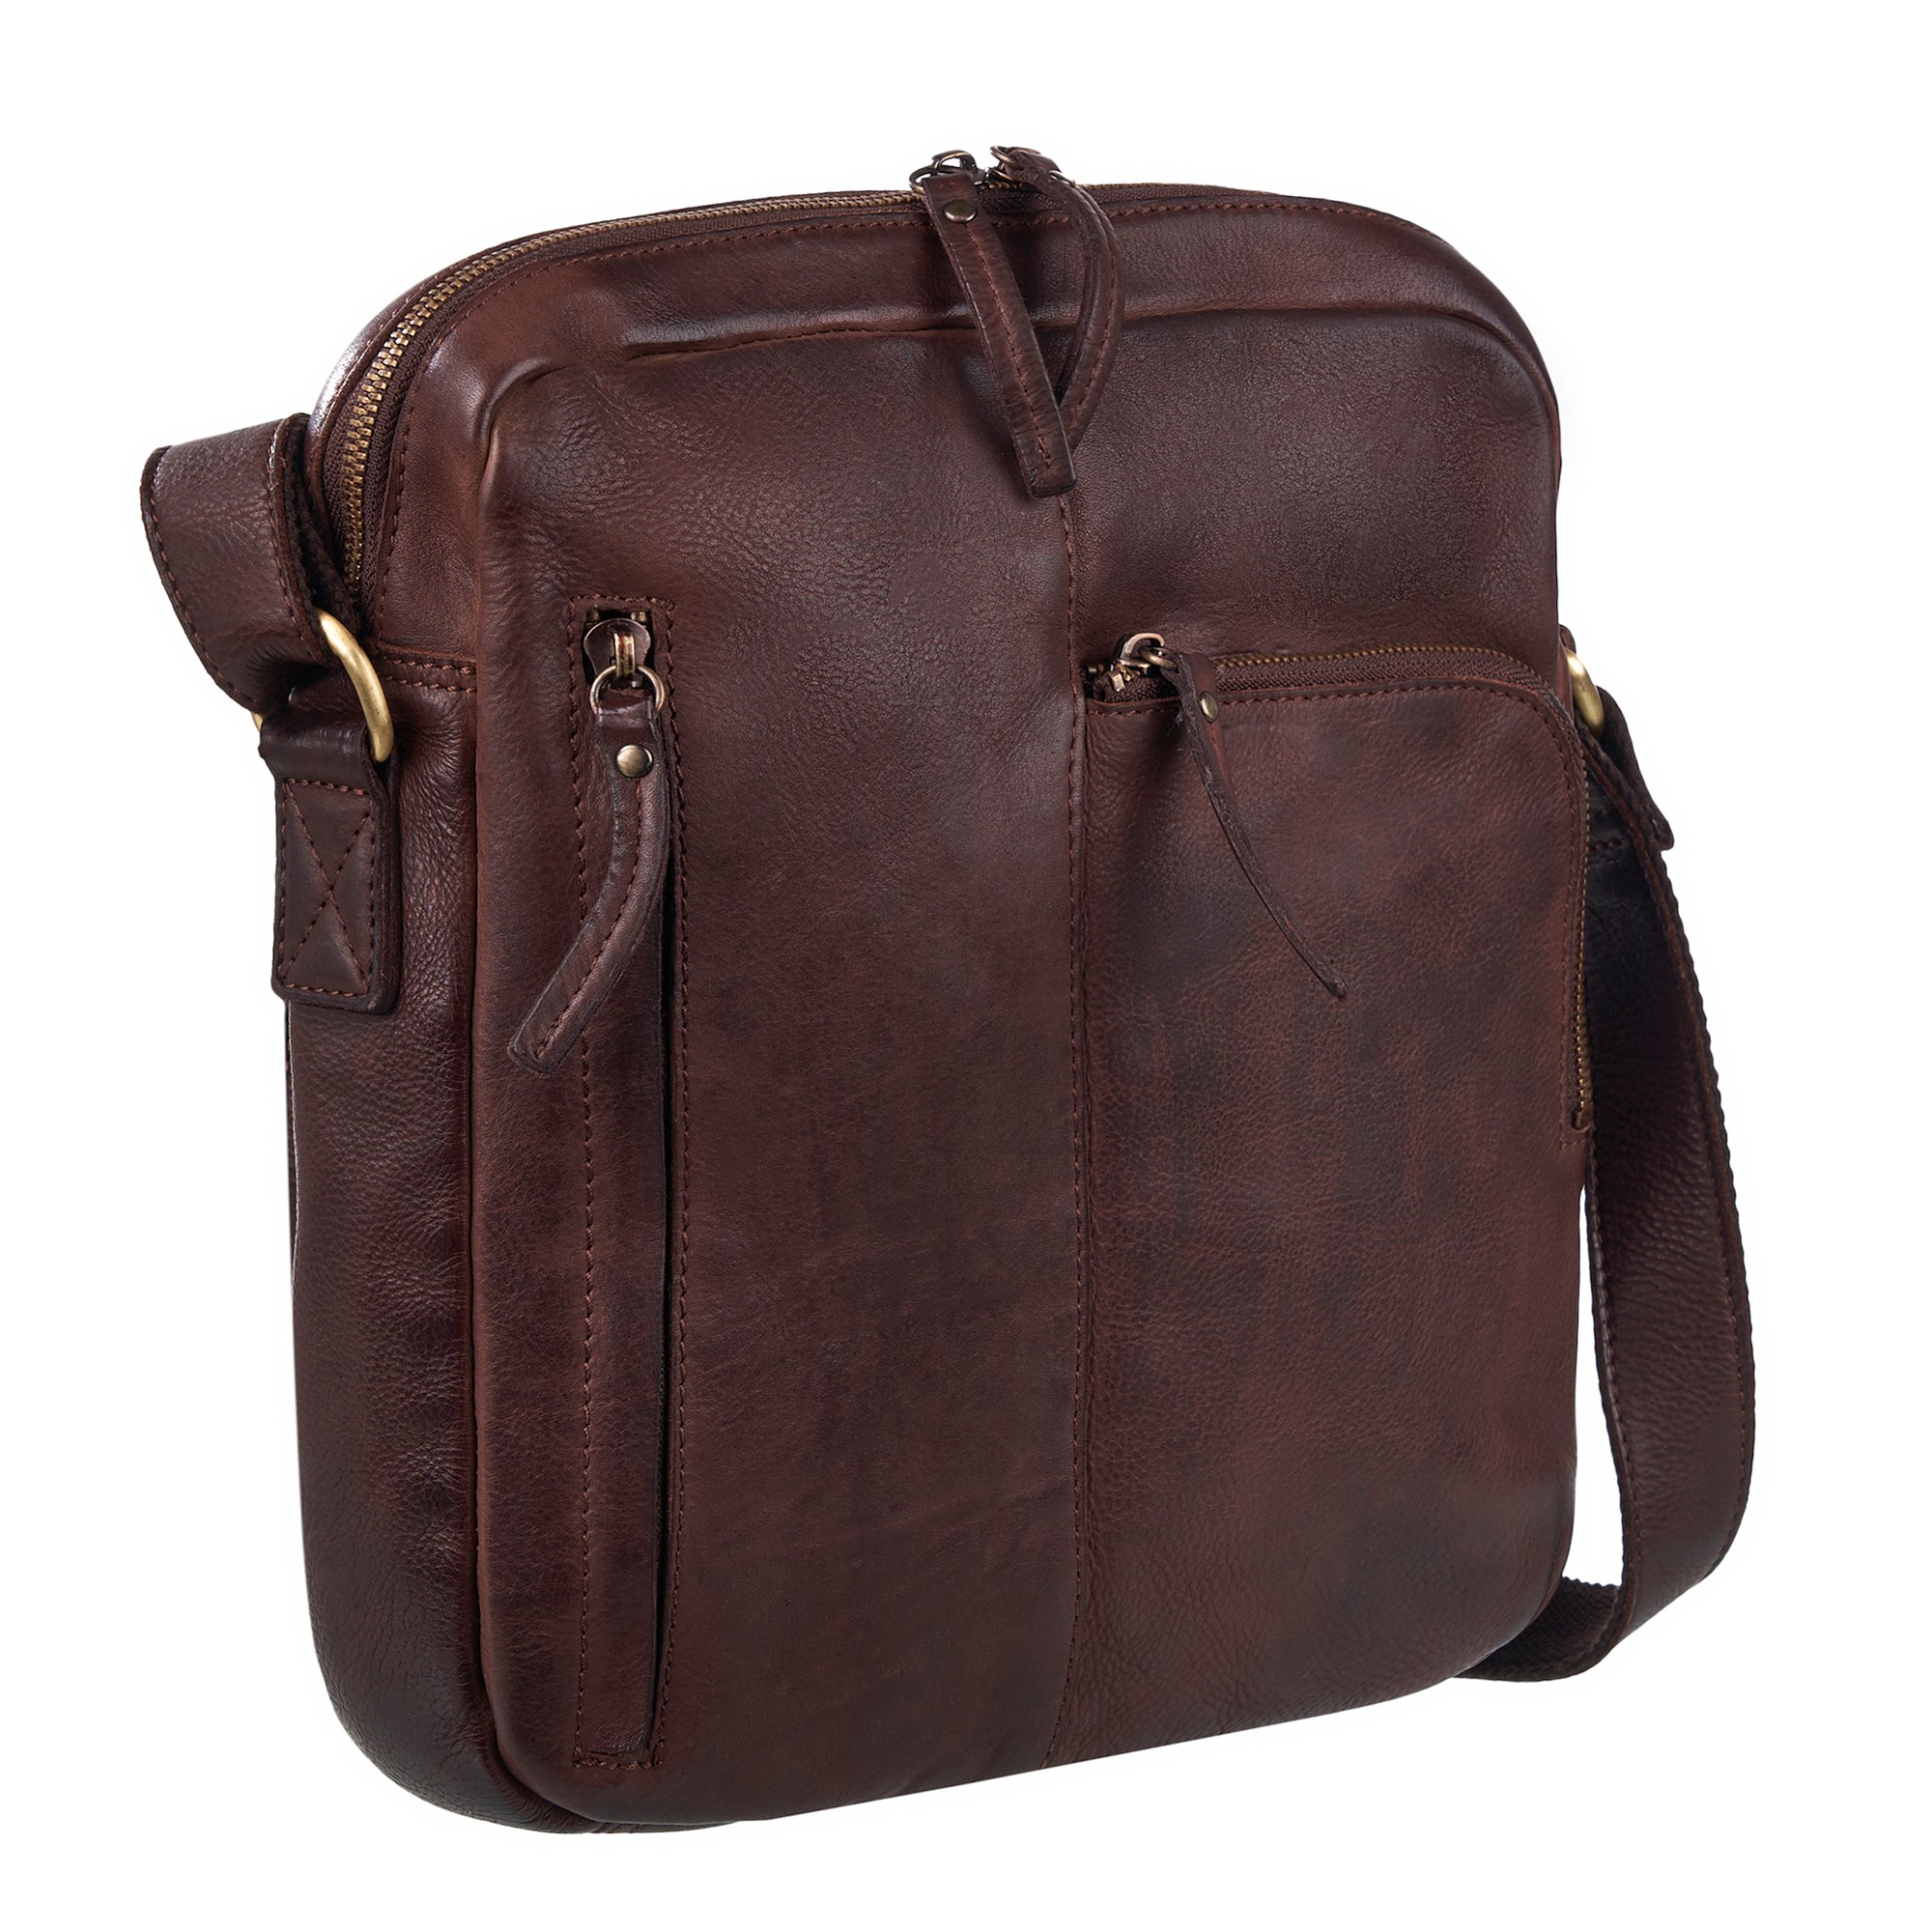 Др.Коффер M402741-248-09 сумка через плечо, цвет коричневый